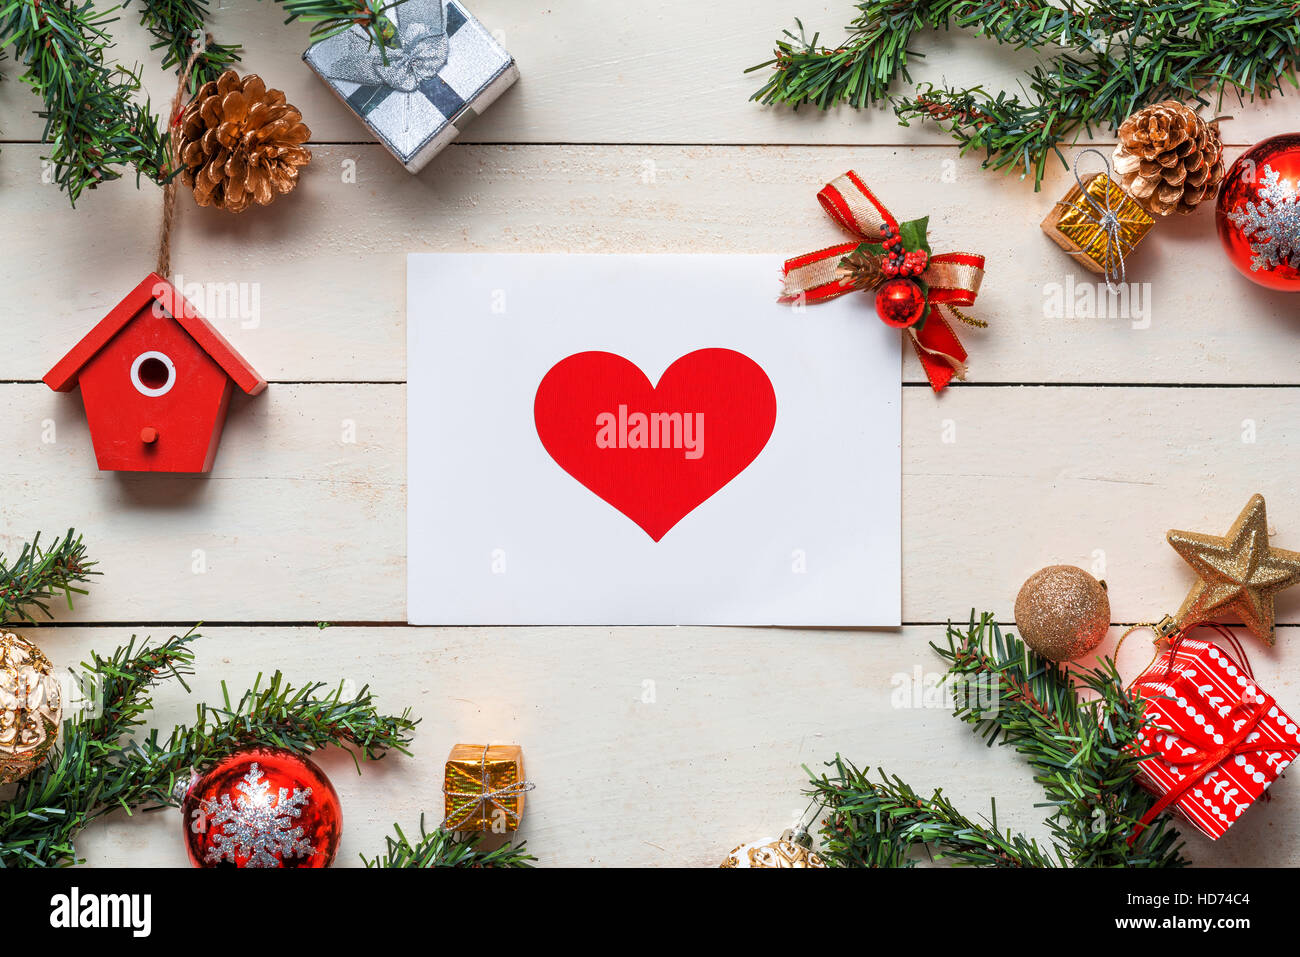 Fond de Noël avec ses décorations avec des cartes de vœux sur fond de bois. Top View with copy space Banque D'Images